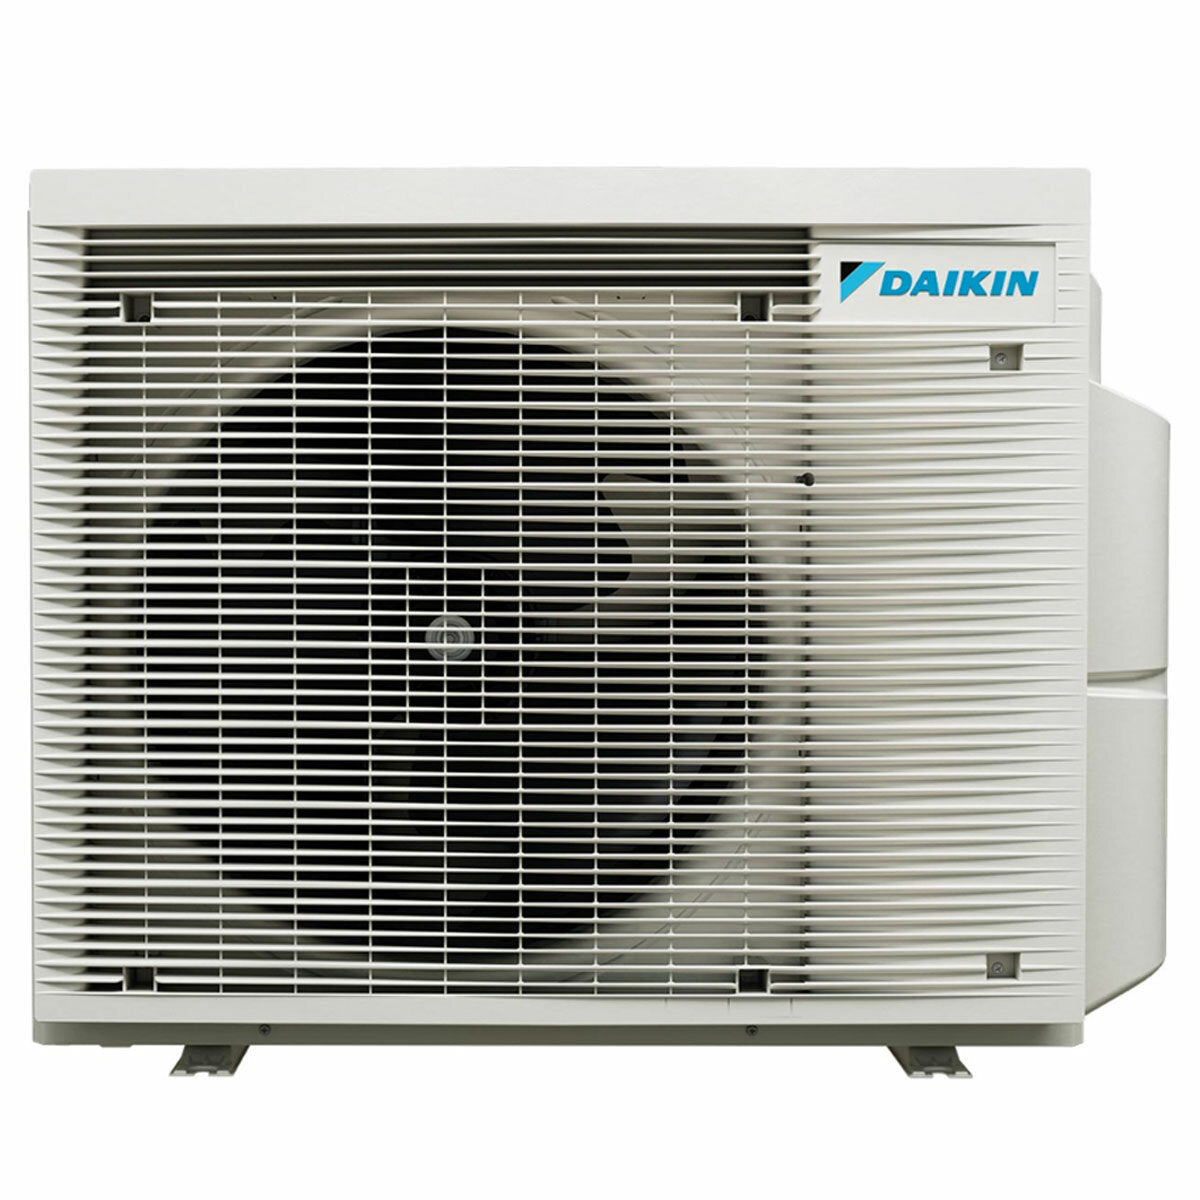 Daikin Emura 3 trial split air conditioner 9000+9000+18000 BTU inverter A+ wifi outdoor unit 6.8 kW Black